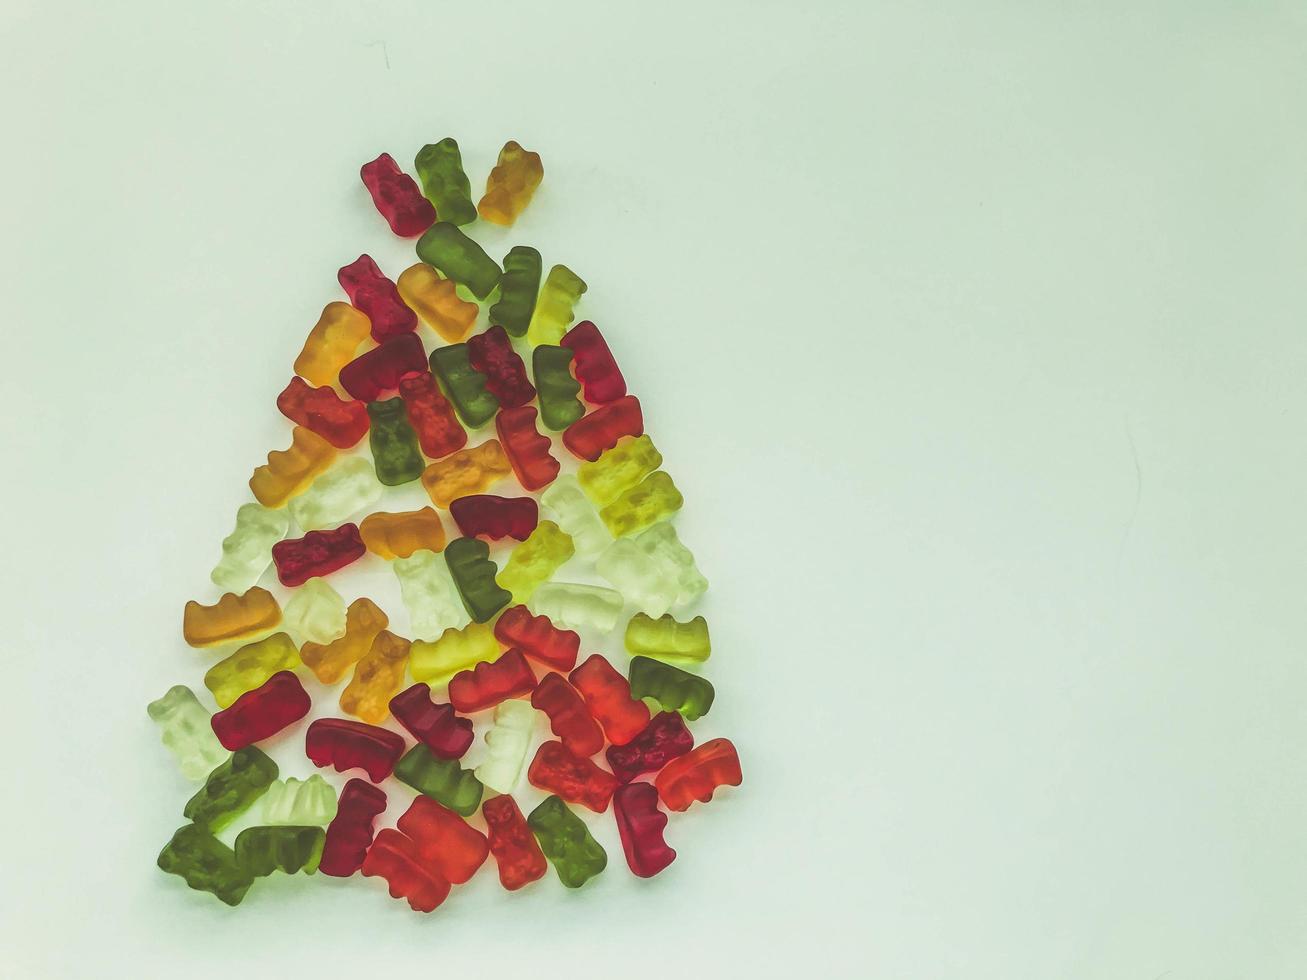 árbol de navidad hecho de deliciosas y dulces gomitas. mermelada en forma de osos, botellas de limonada. árbol de navidad hecho de caramelos brillantes, coloridos y dulces foto